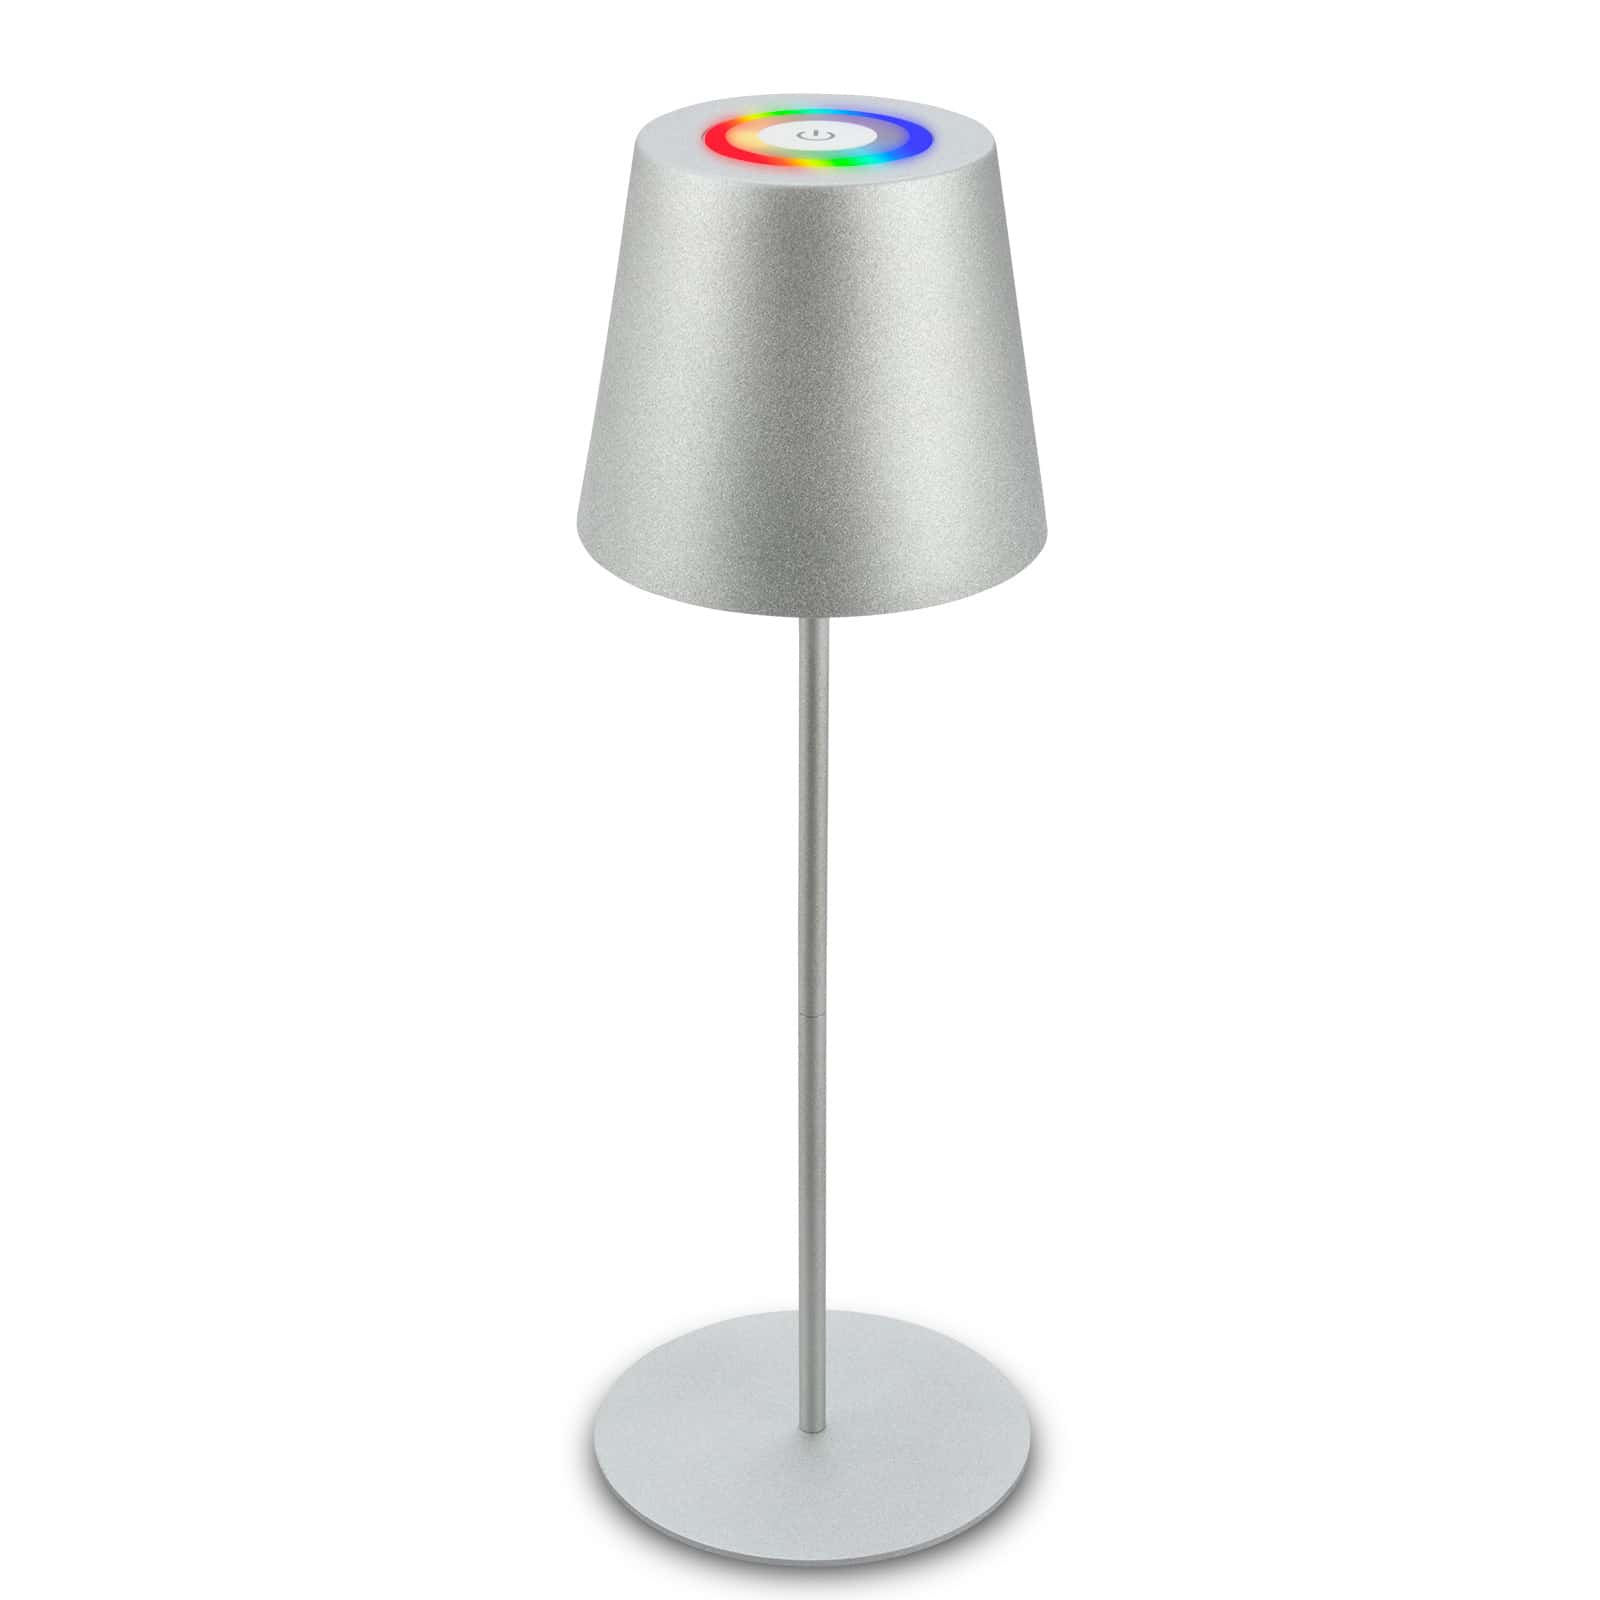 Briloner lampada da tavolo senza fili, touch, luce colorata RGB+W, regolabile in altezza